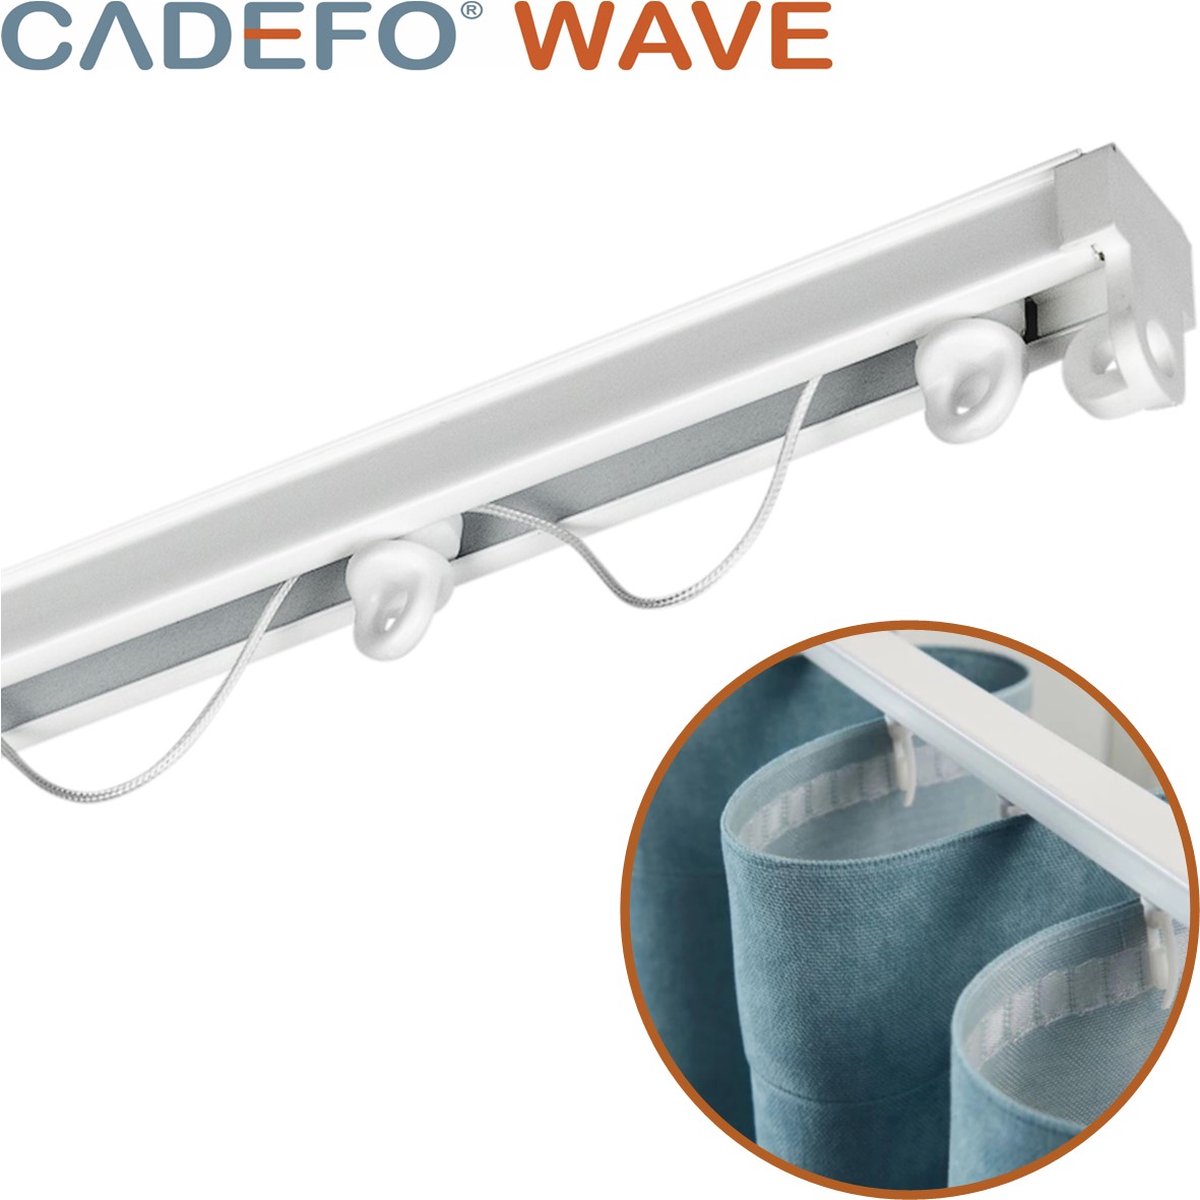 CADEFO WAVE (351 - 400 cm) Gordijnrails - Compleet op maat! - UIT 1 STUK - Leverbaar tot 6 meter - Plafondbevestiging - Lengte 357 cm